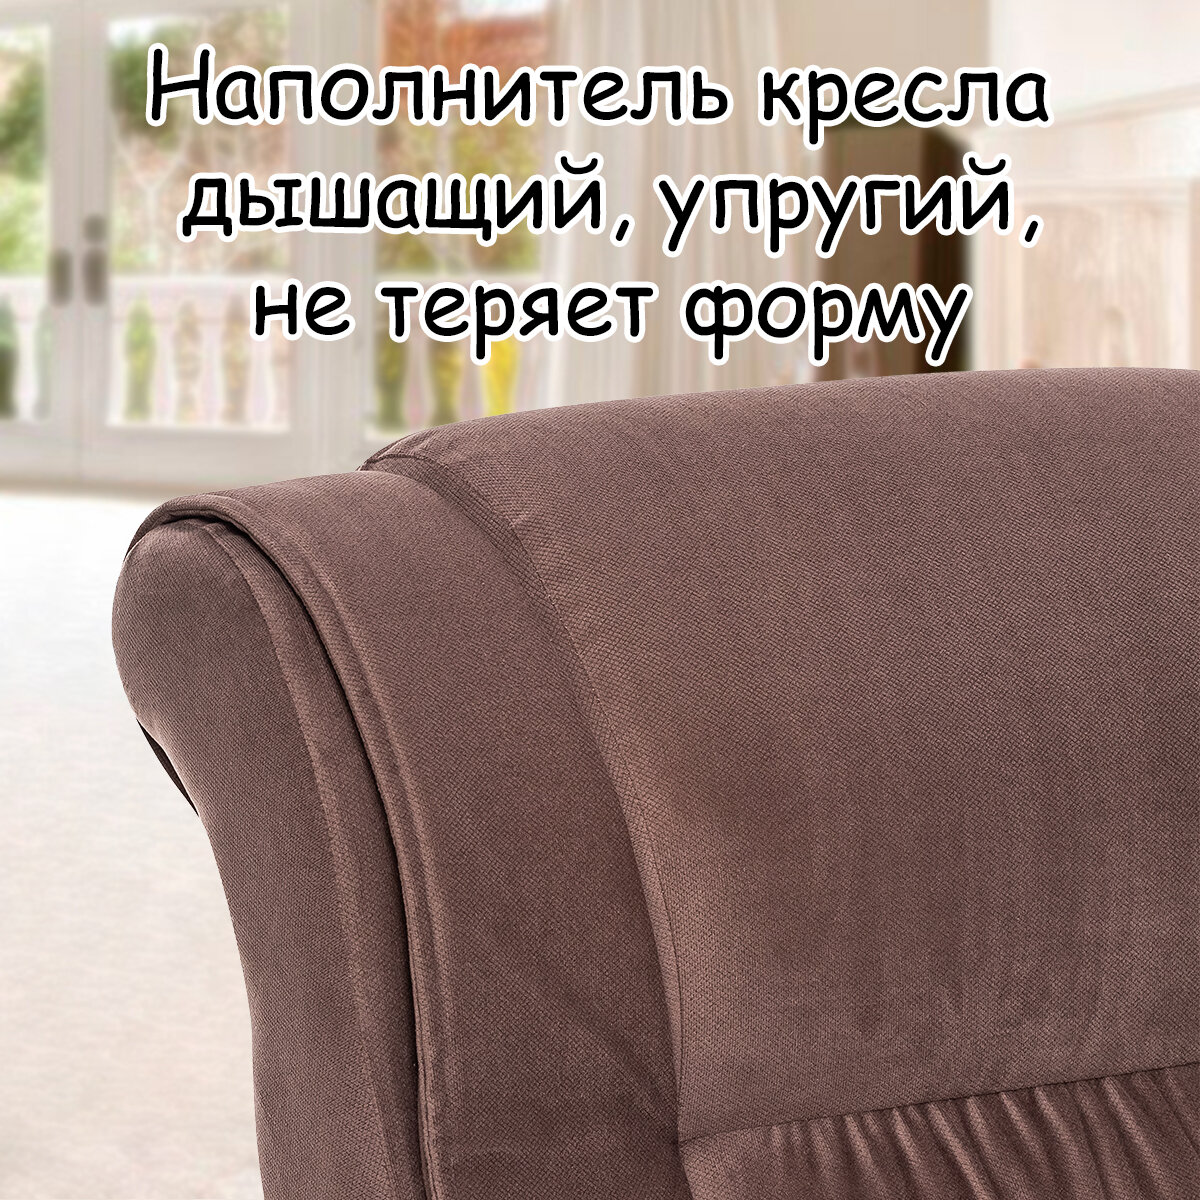 Кресло для взрослых 65х89х104 см, модель 71, maxx, цвет: Мaxx 235 (коричневый), каркас: Venge (черный) - фотография № 6